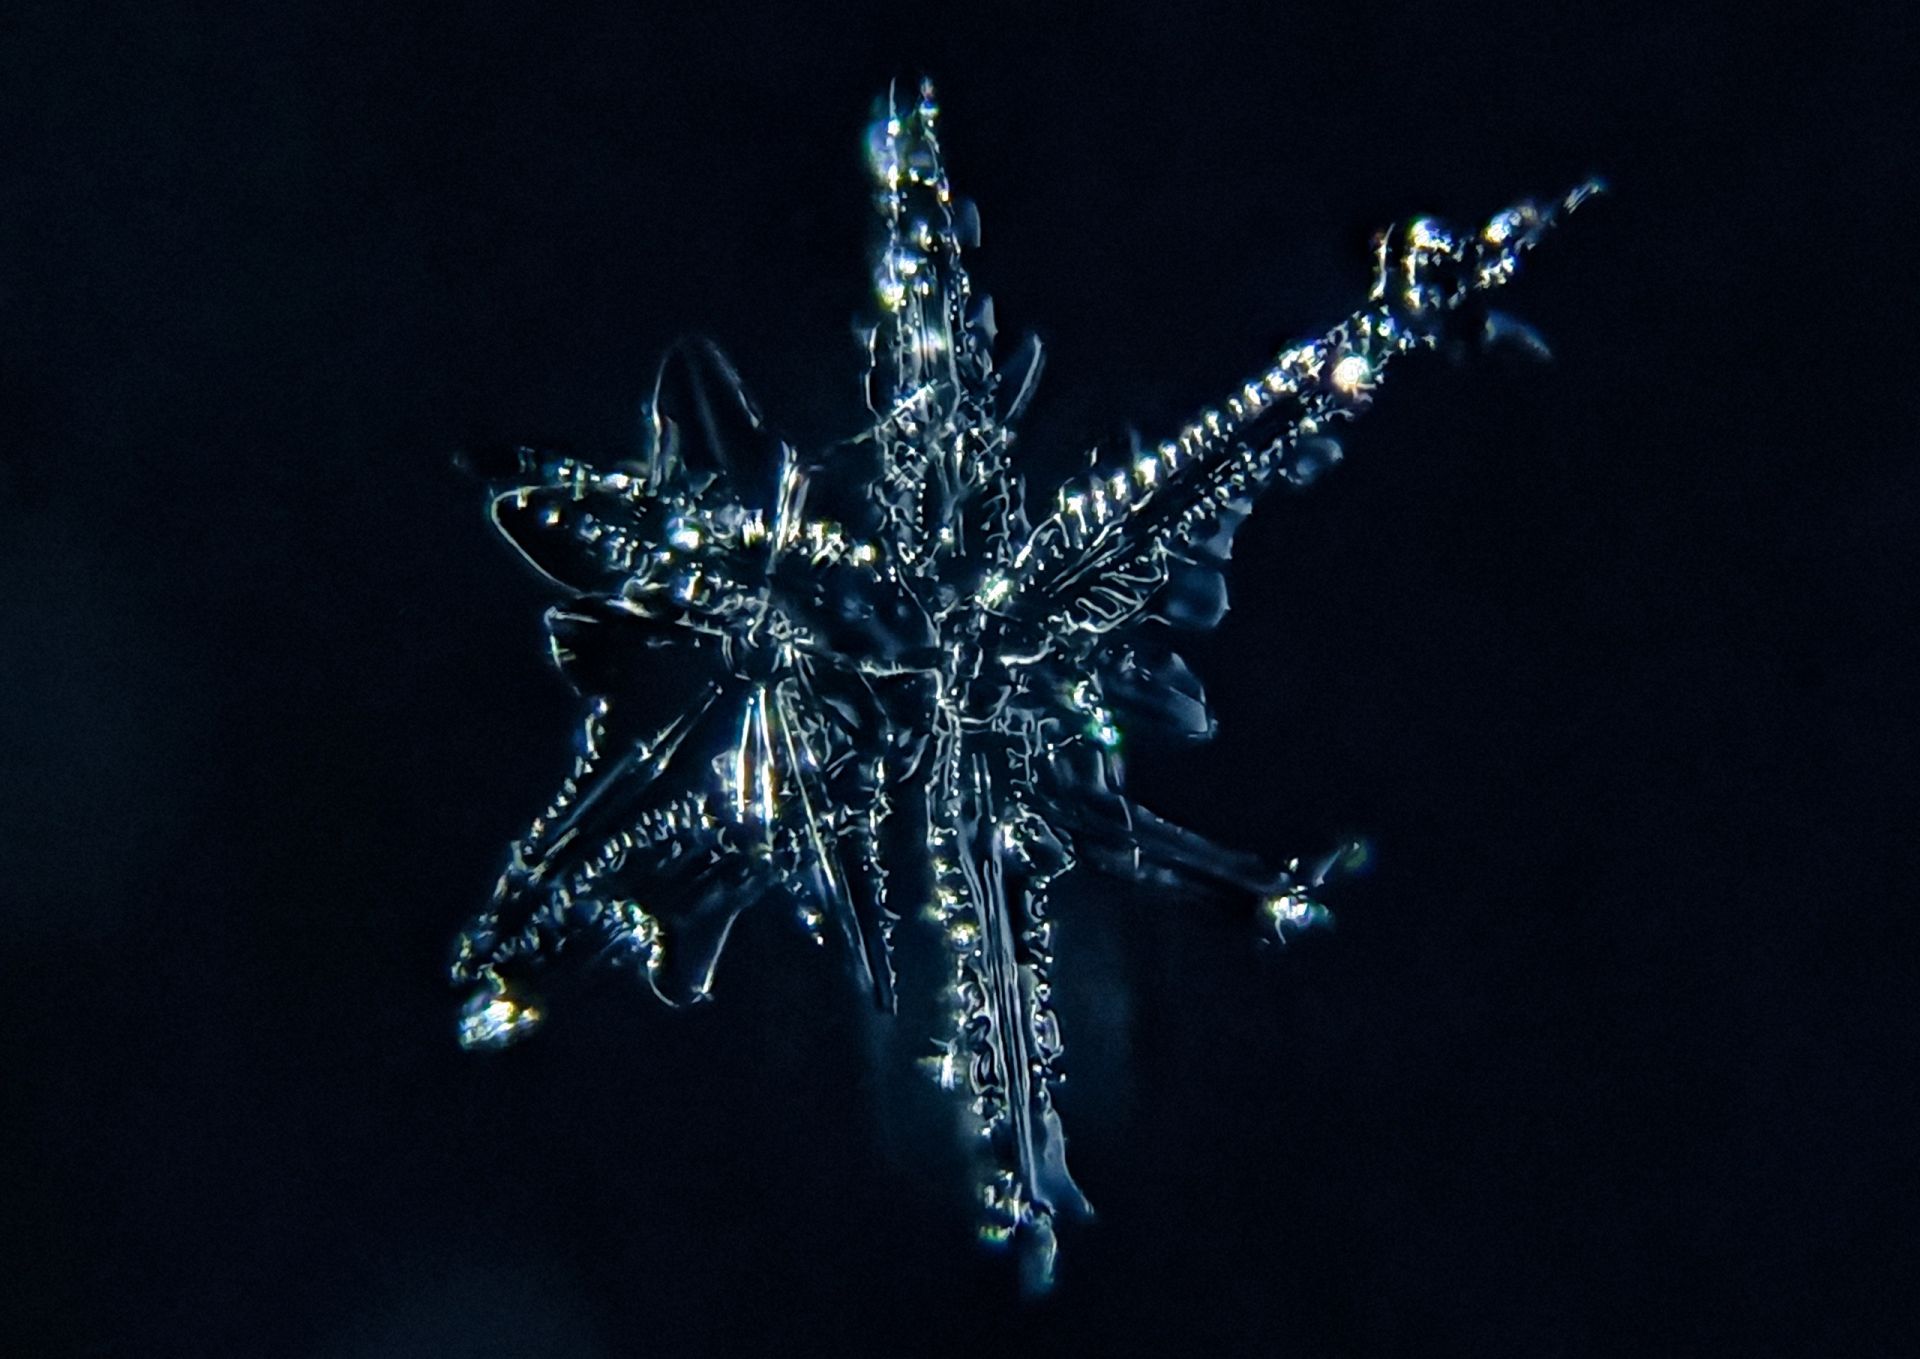 Ильсур Абдуллин из Азева показал невероятные снежинки под микроскопом (ФОТО)